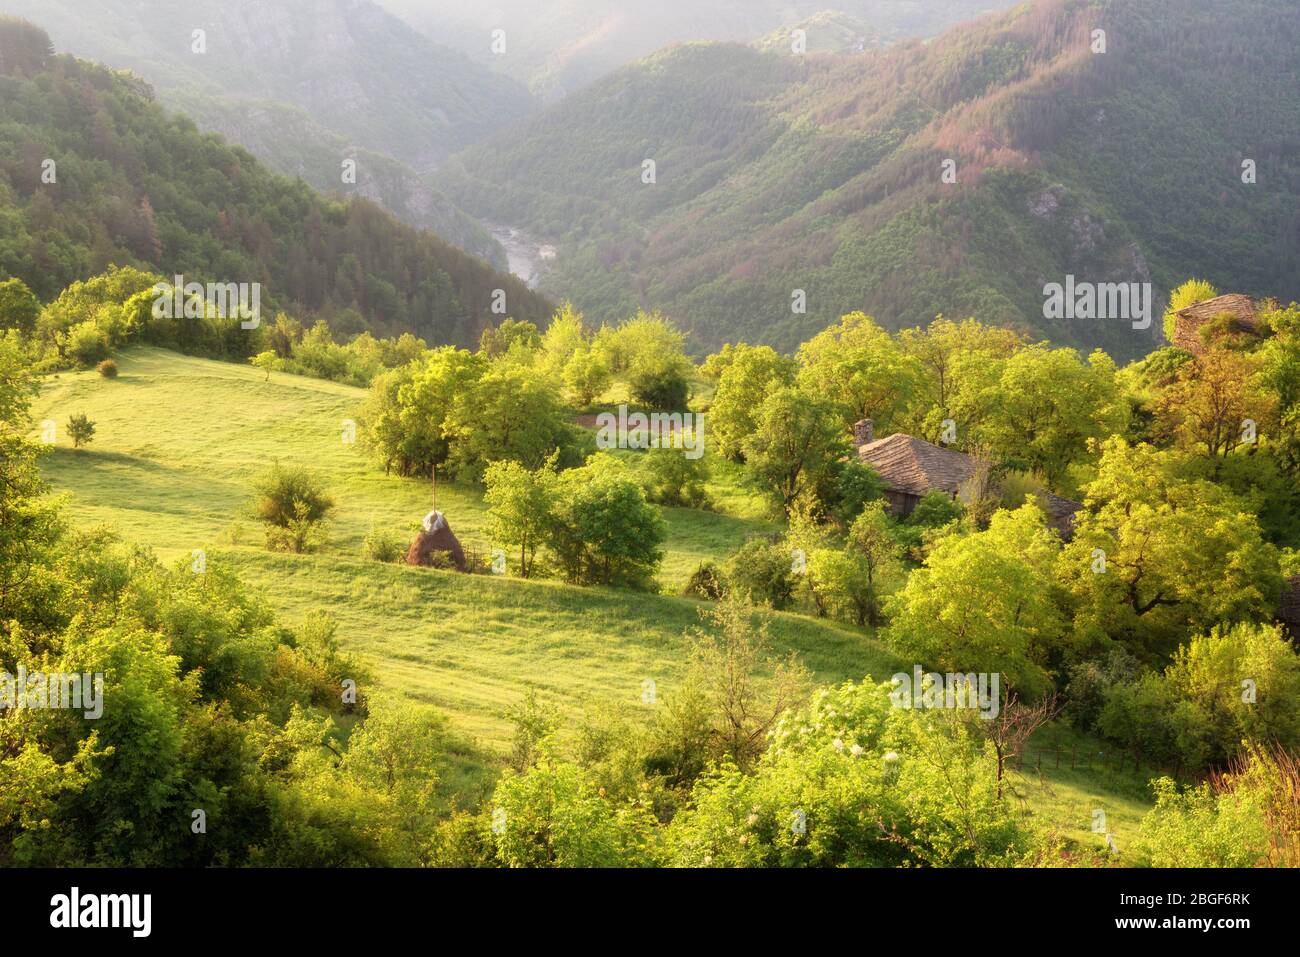 Der Frühling kommt... Erstaunliche Frühling Blick mit einem kleinen Dorf in Rhodopi Gebirge, Bulgarien. Herrliche Landschaft, grüne Felder, kleine Häuser. Stockfoto